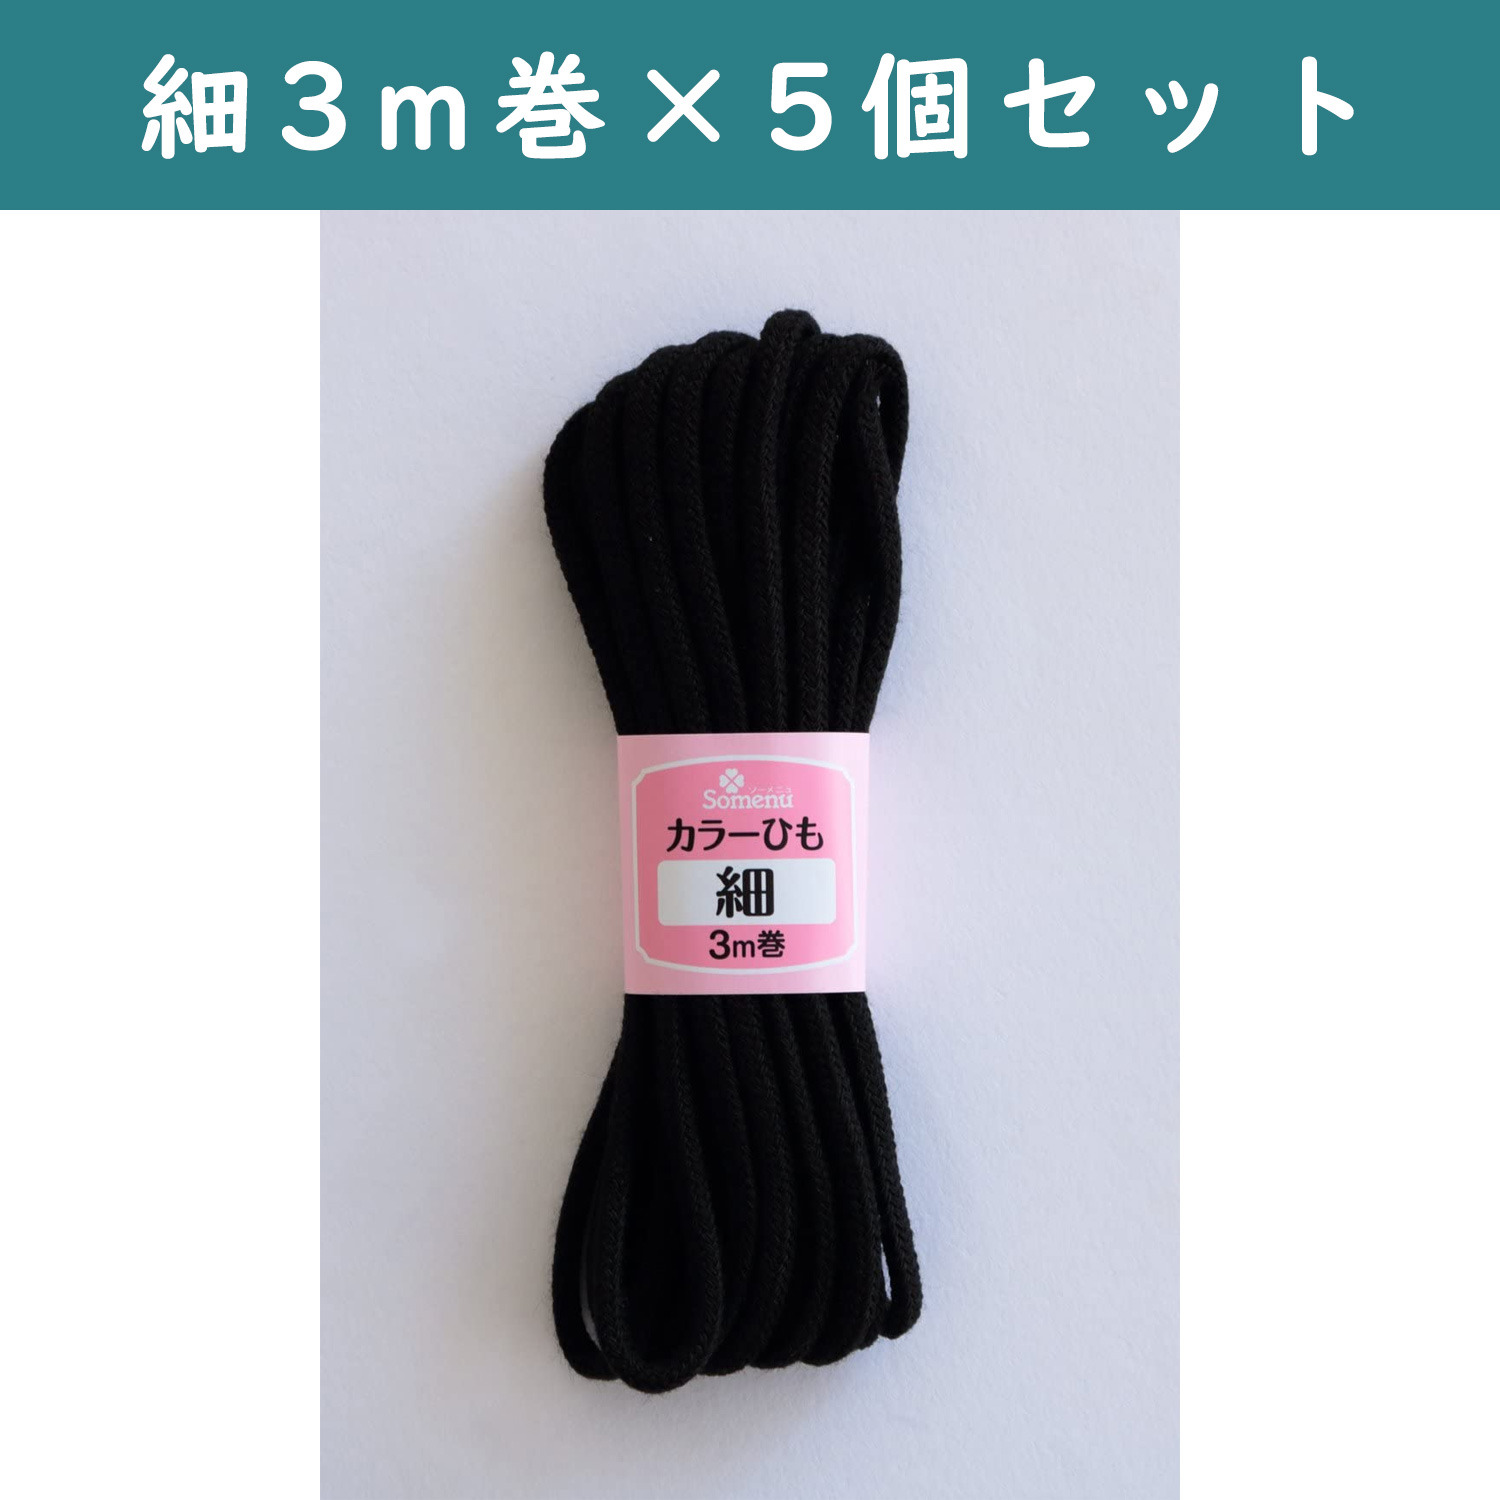 ■【5個】CL26-143-5set カラーひも 細 3m巻 黒 5個セット (セット)